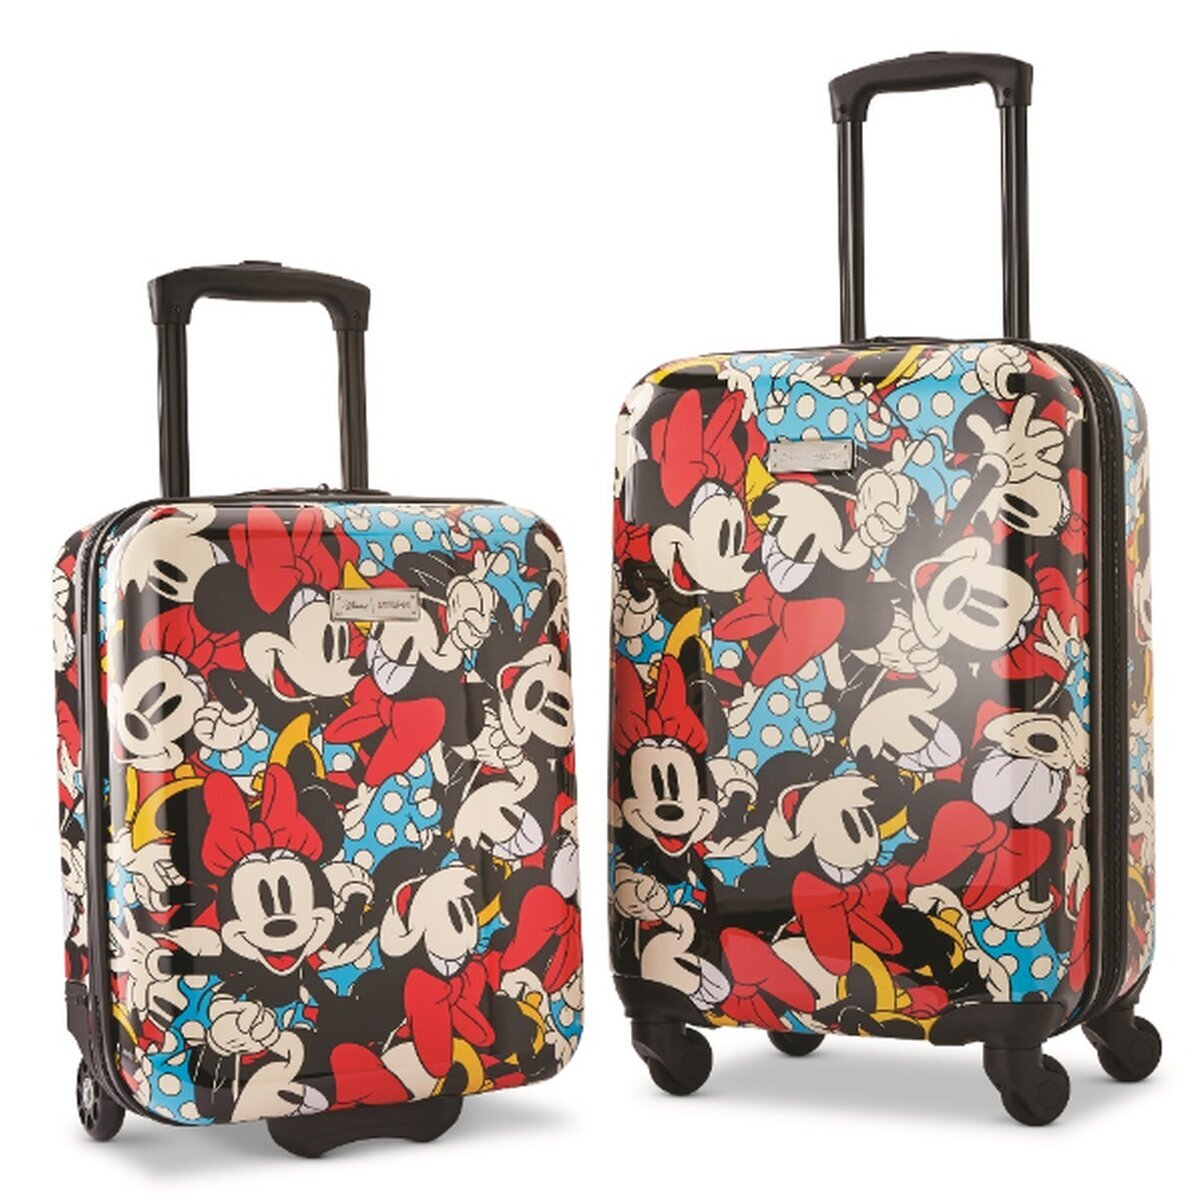 アメリカンツーリスター ディズニー スーツケース 2個セット | Costco